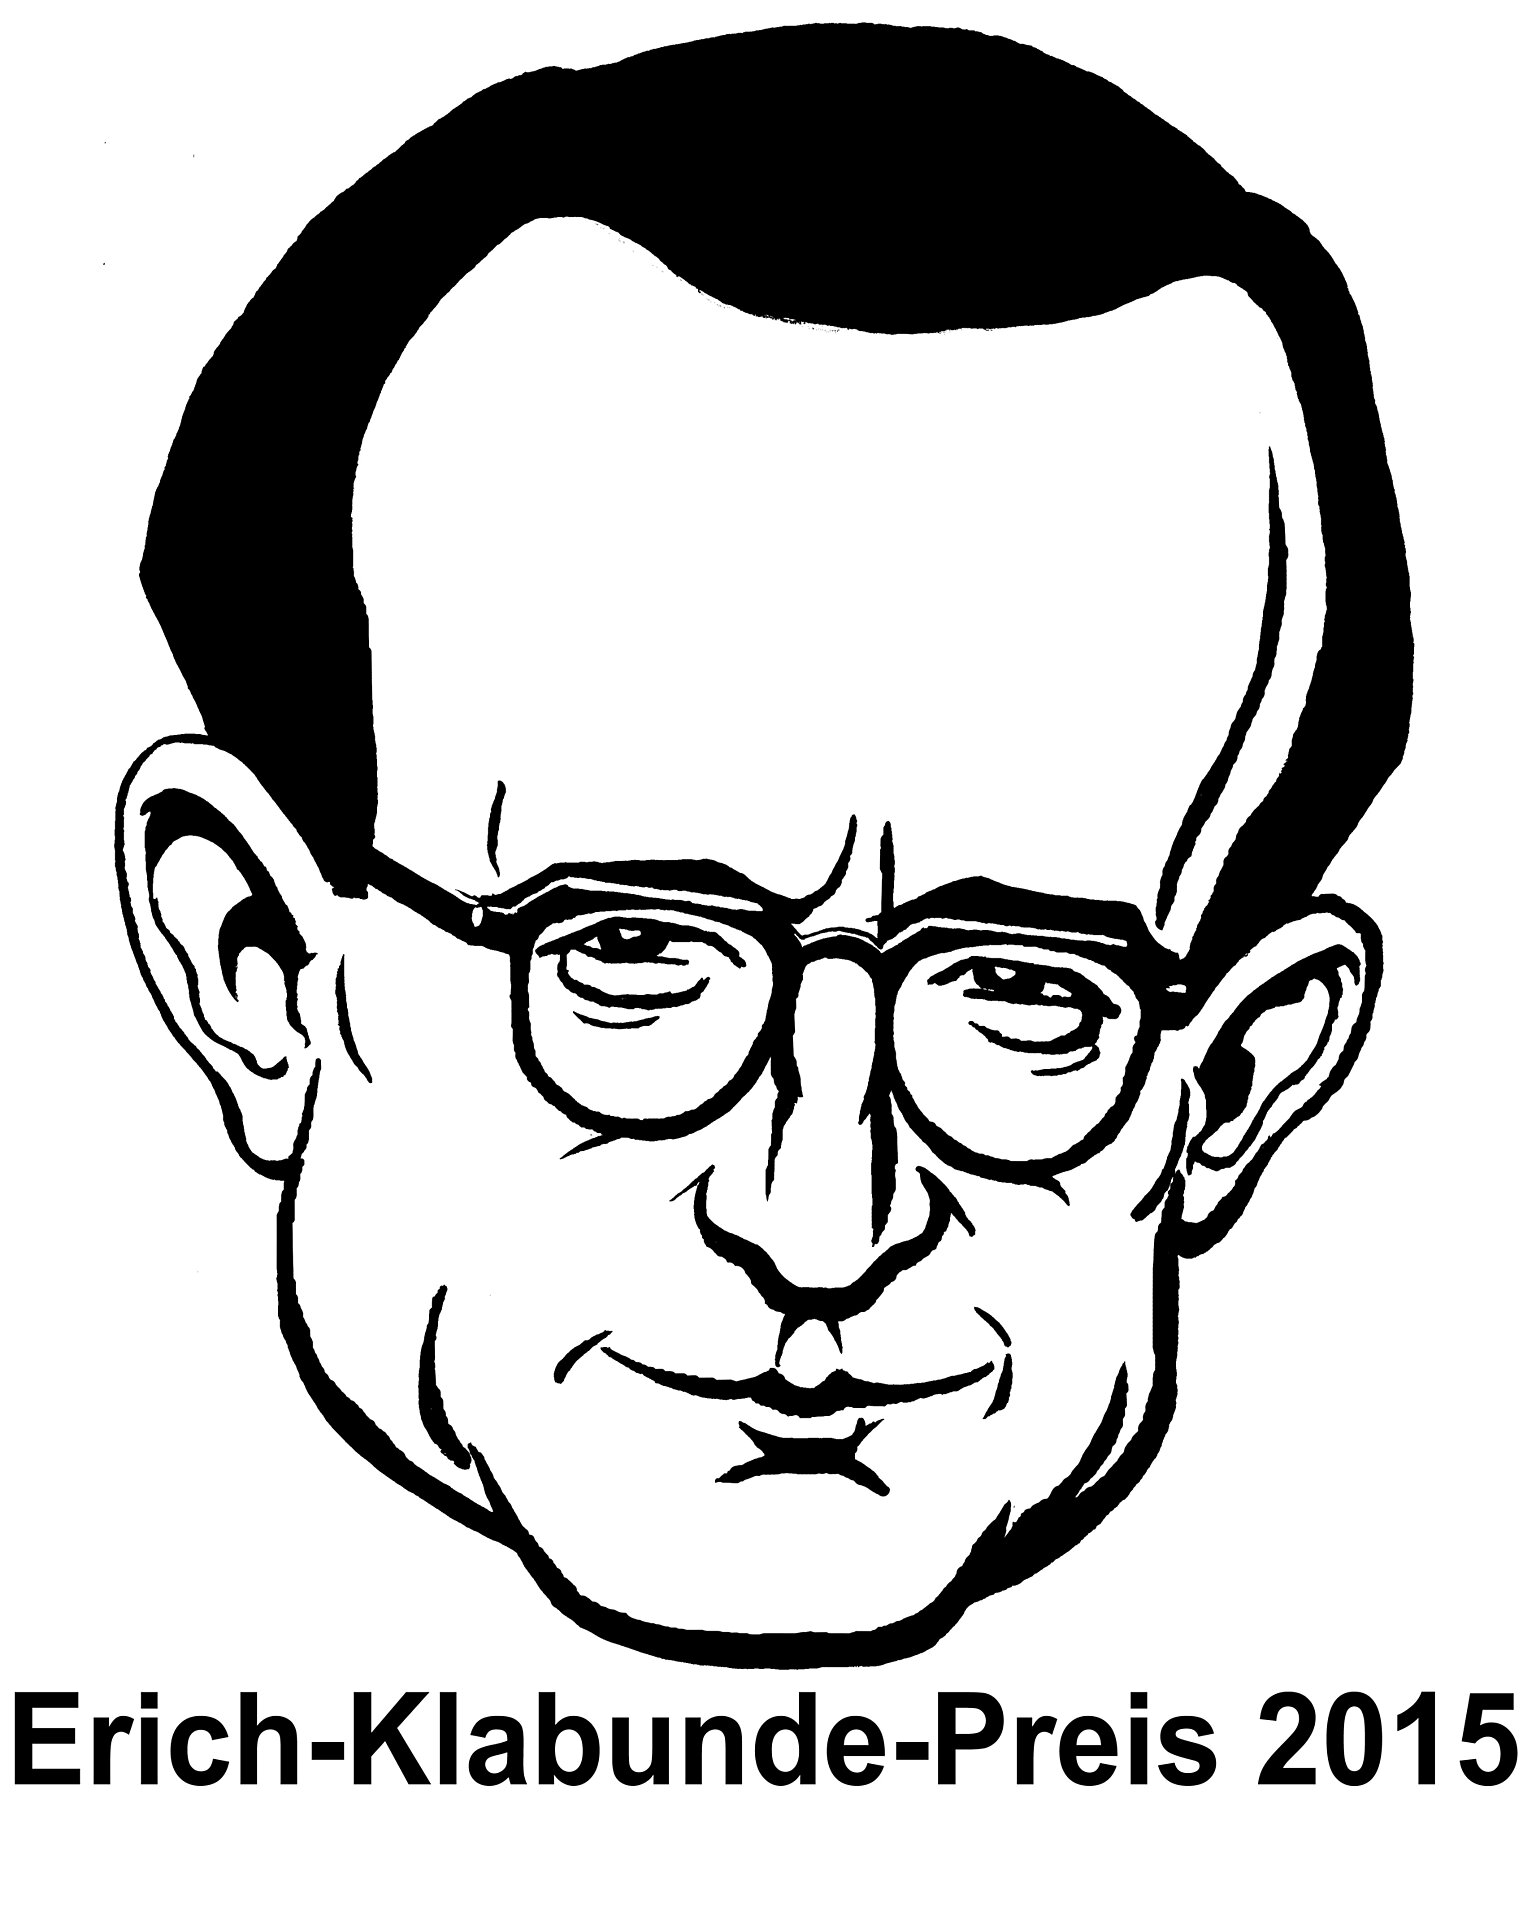  – Von diesem Jahr an illustriert der Kopf des Namengebers Erich Klabunde den Preis. Gestaltet wurde er von George Riemann.